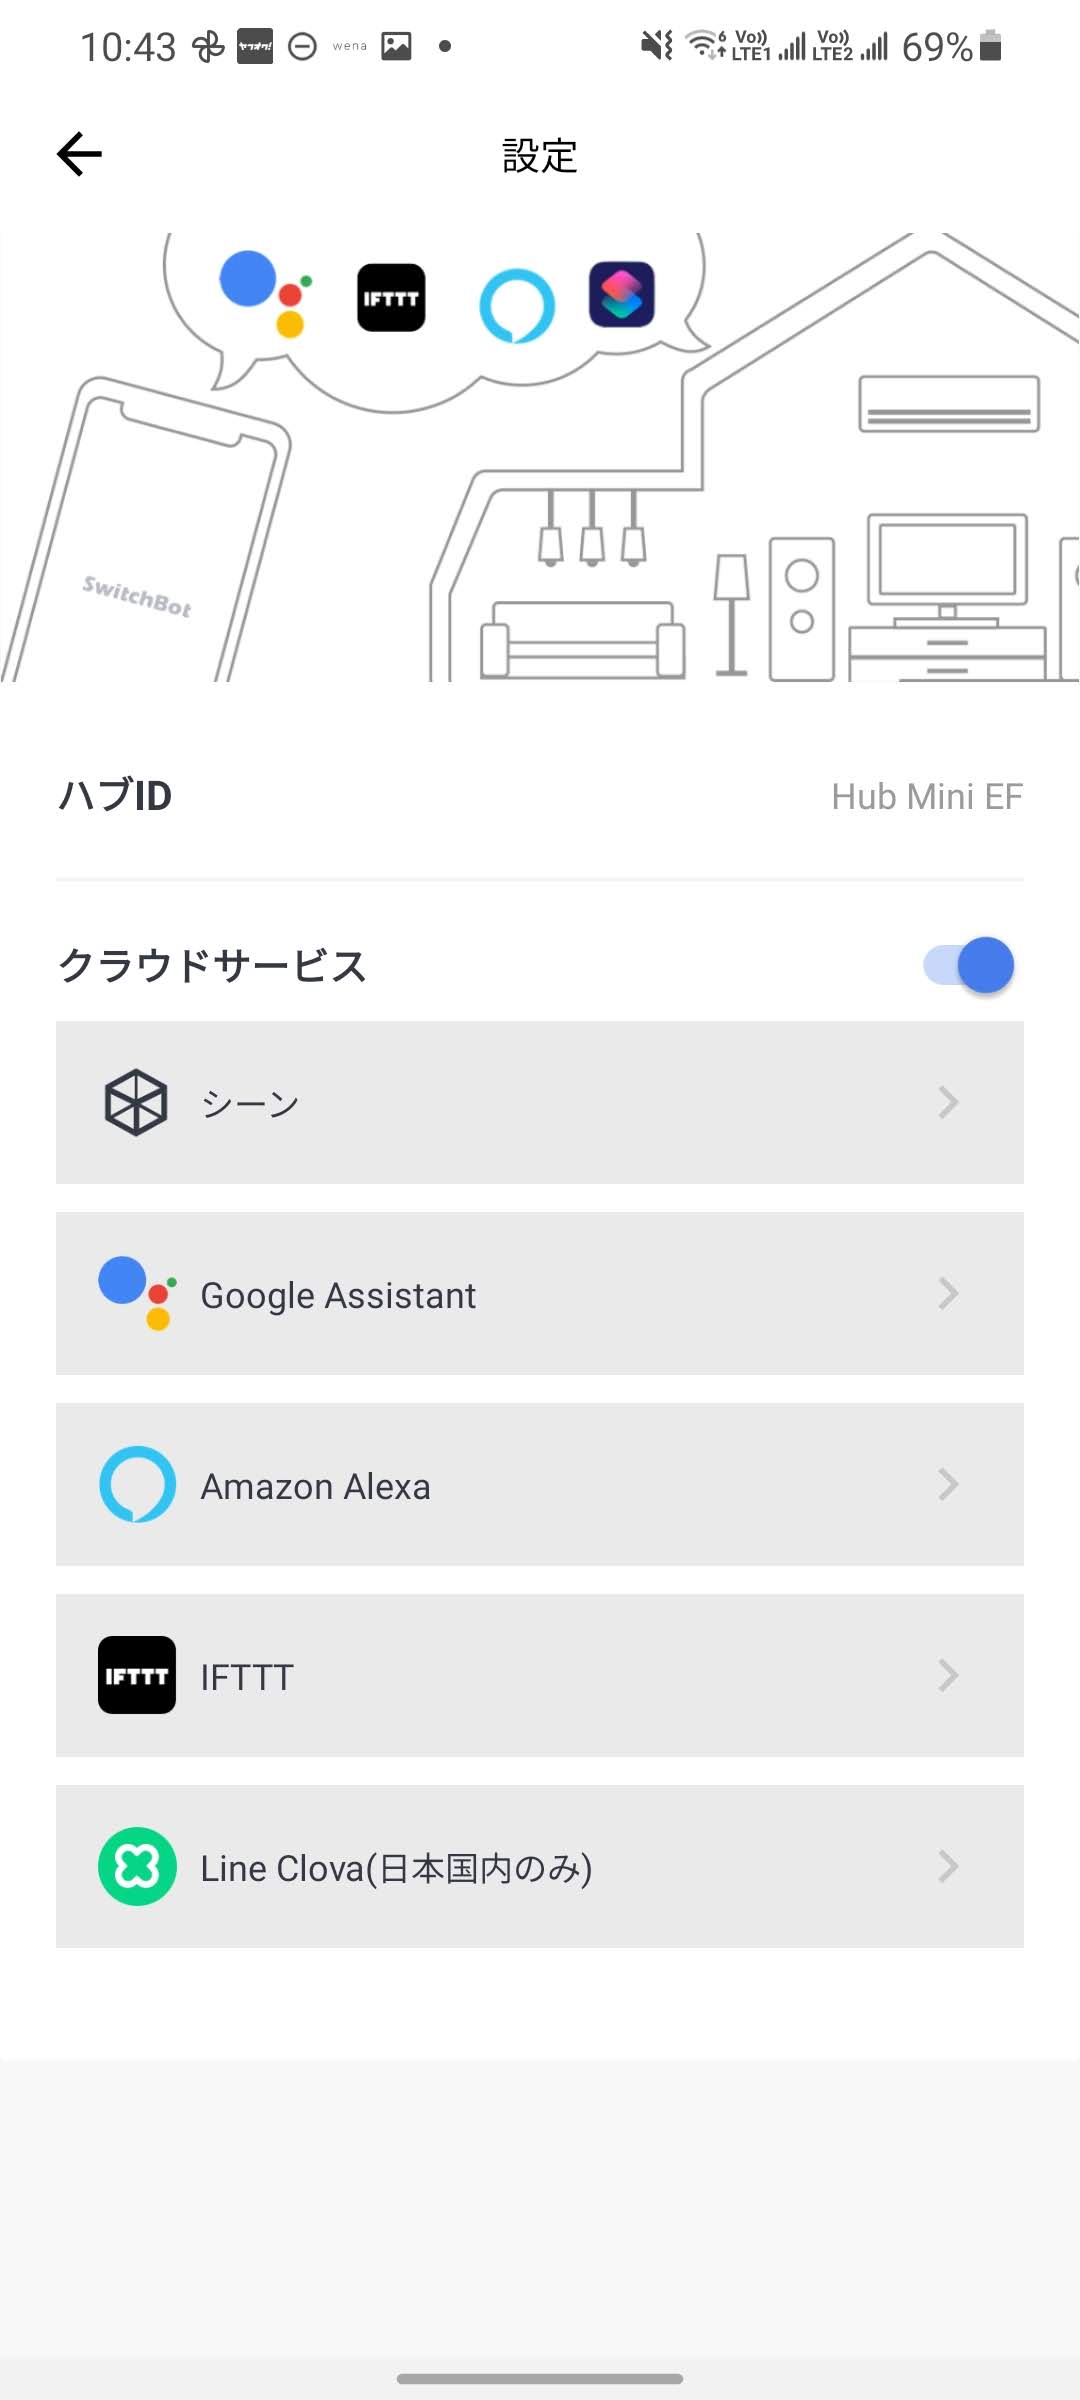 SwitchBot 5個とHub Miniセット お値引き不可 - rehda.com